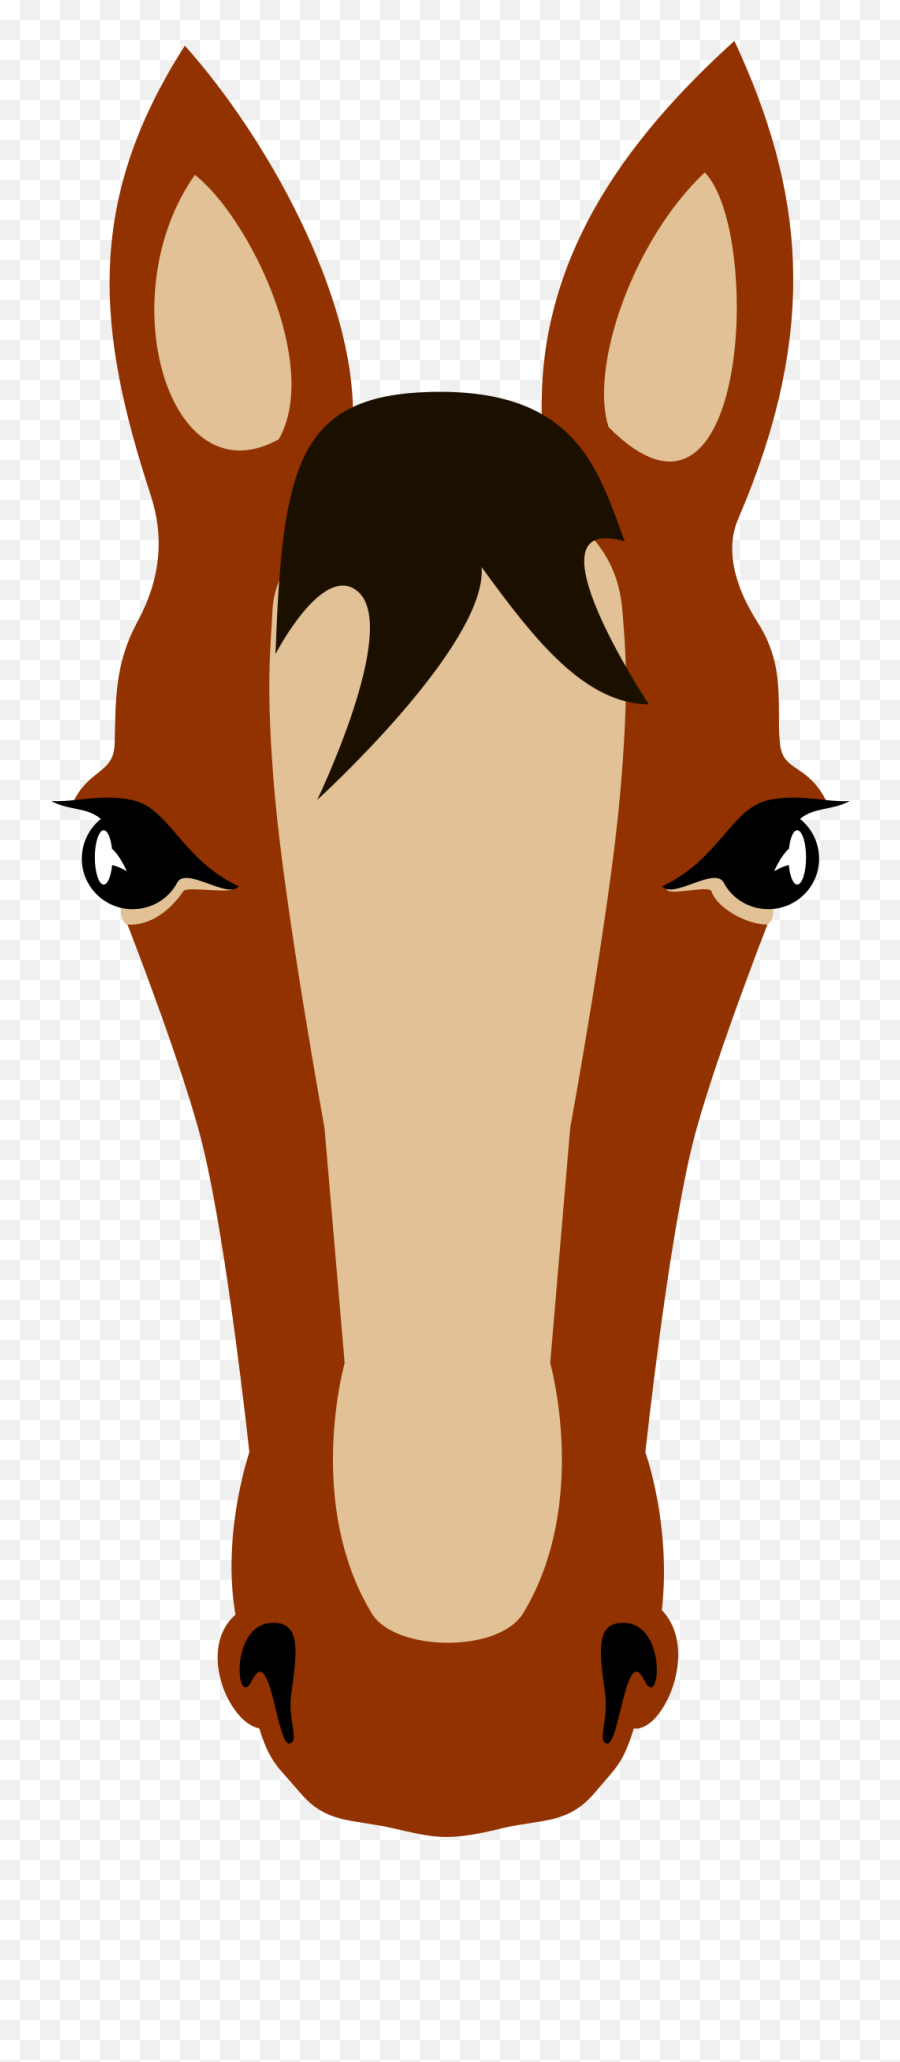 Horse Face Png Picture - Clipart Horse Face Cartoon Emoji,Horse Face Emoji